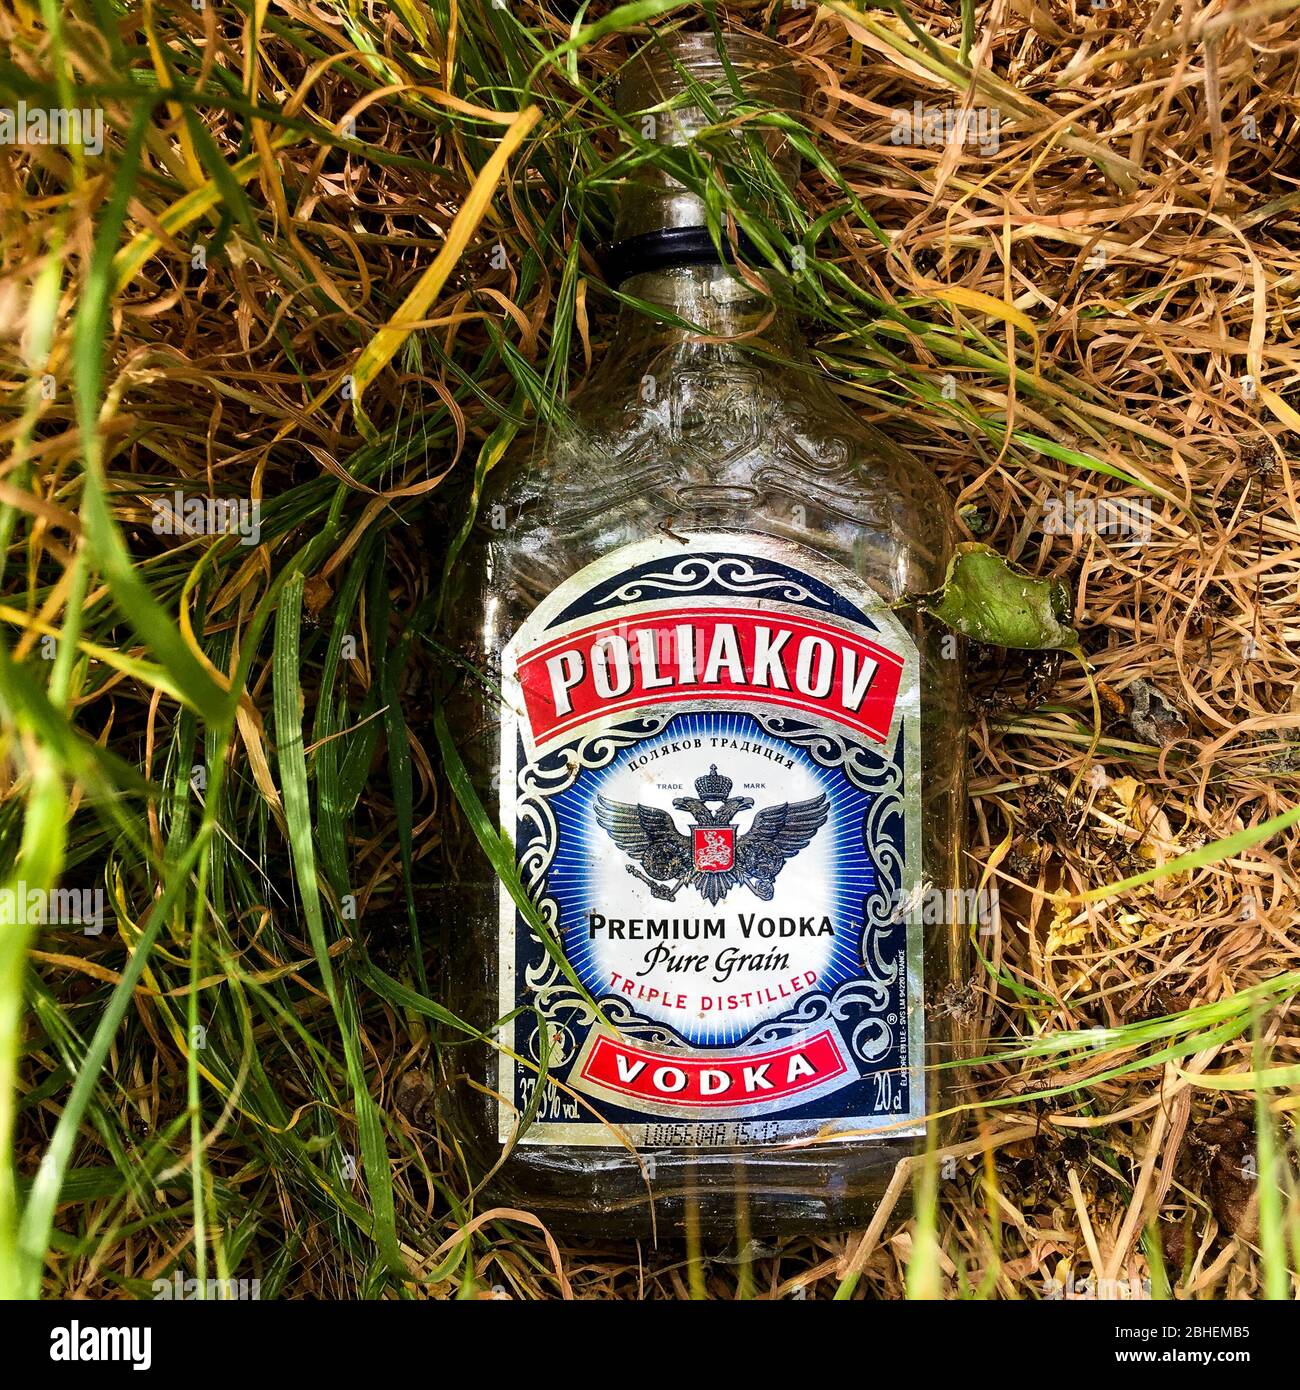 BOUTEILLE VODKA POLIAKOV Premium Vodka